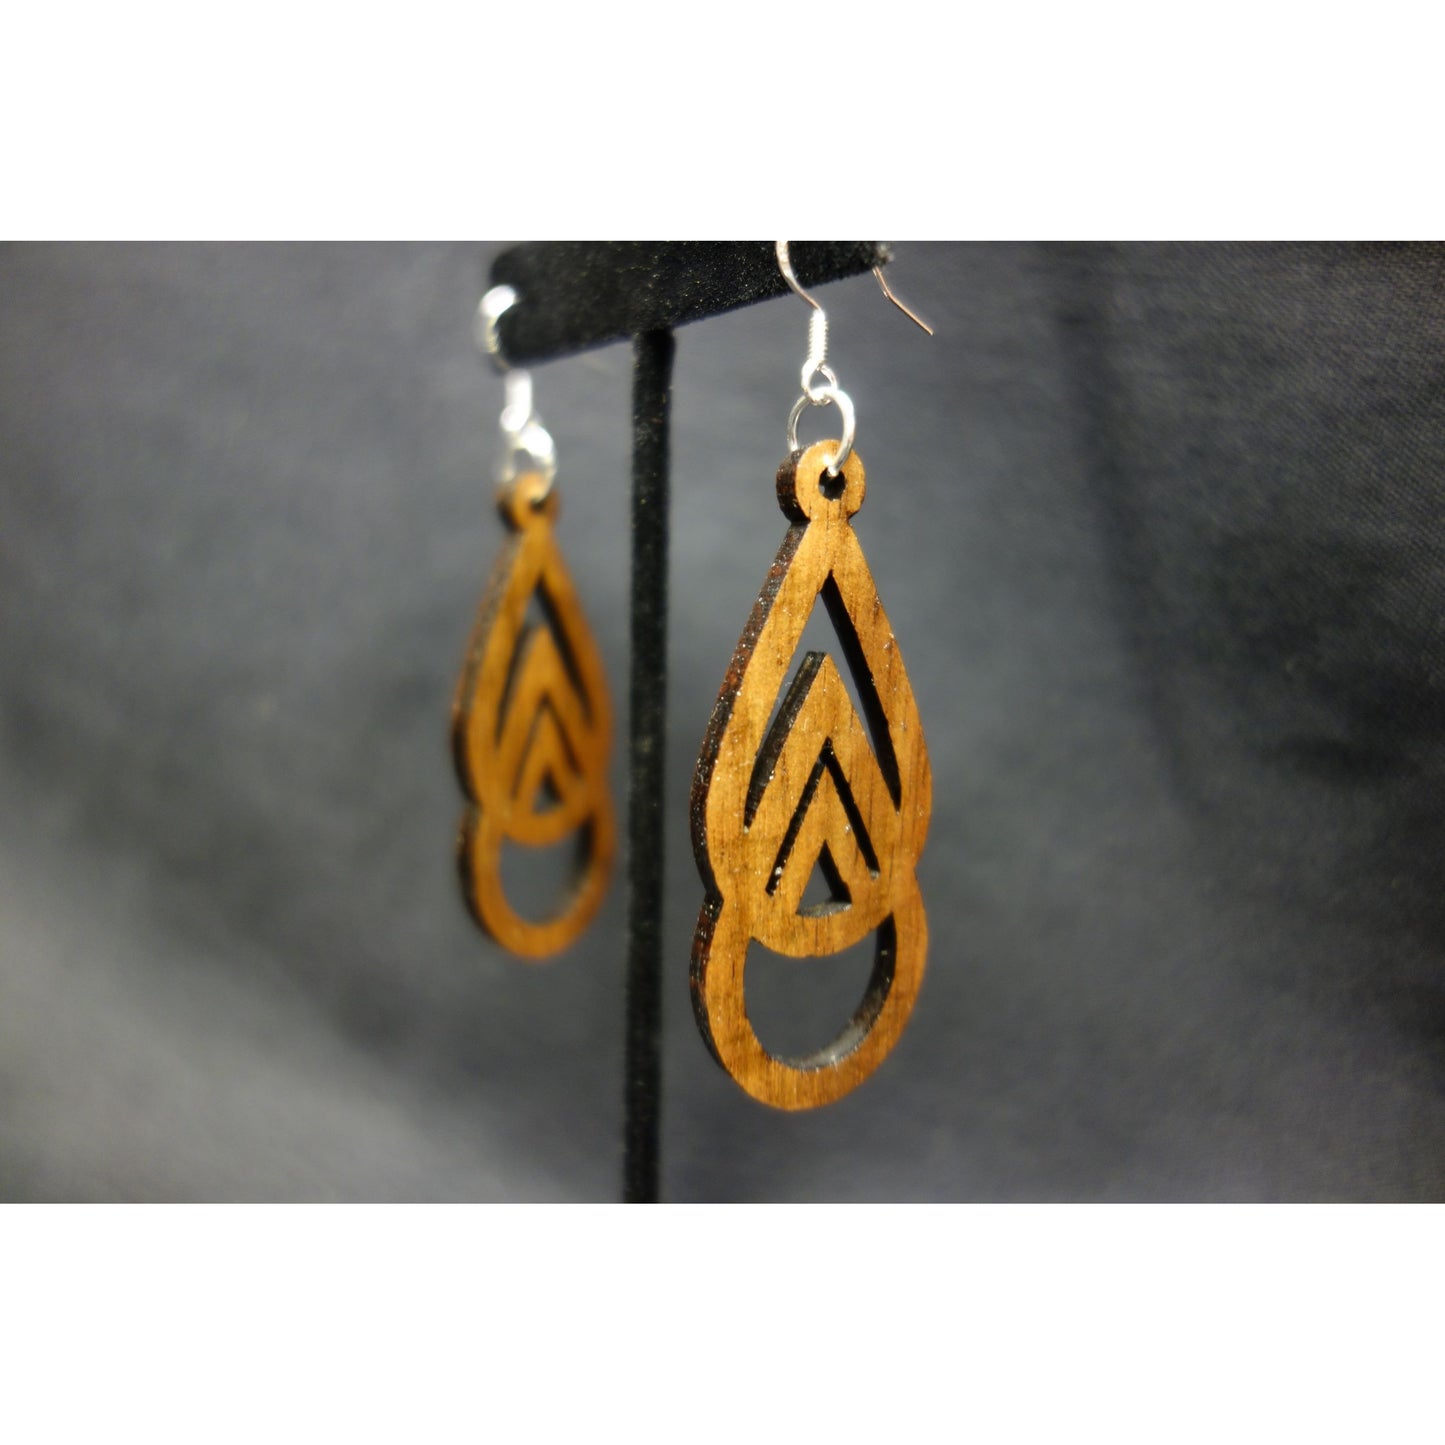 Koa Wood Mauka to Makai Triangle Earrings